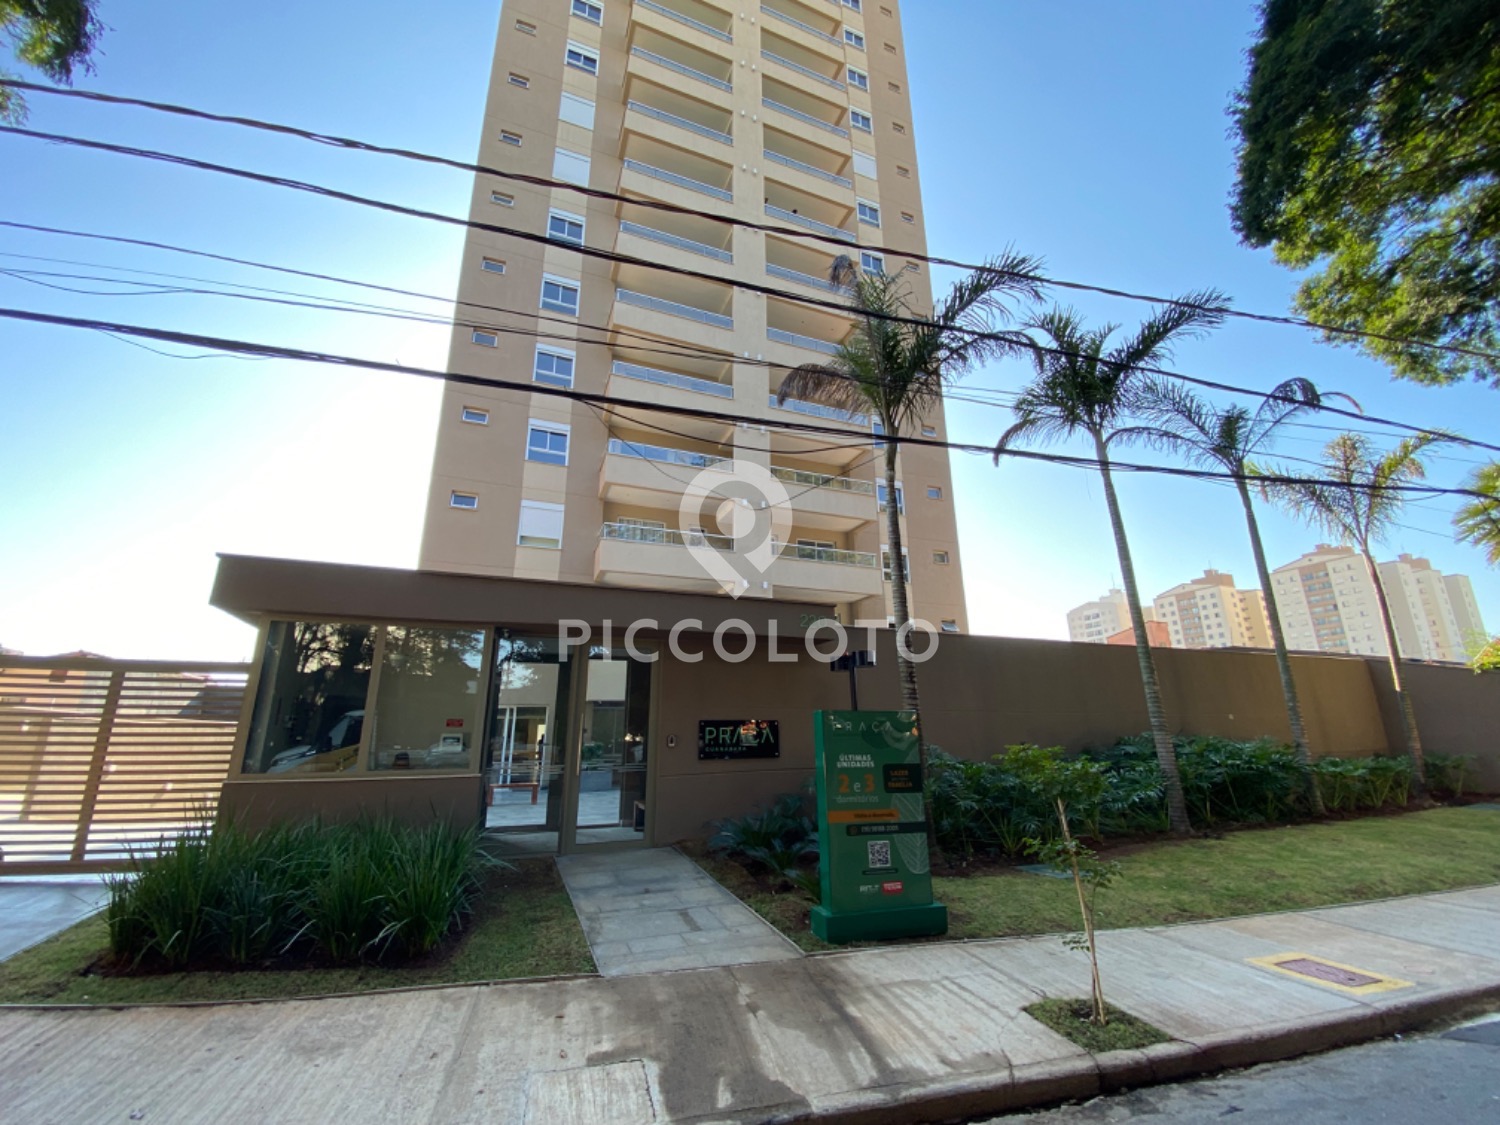 Piccoloto - Apartamento para alugar no Jardim Brasil em Campinas